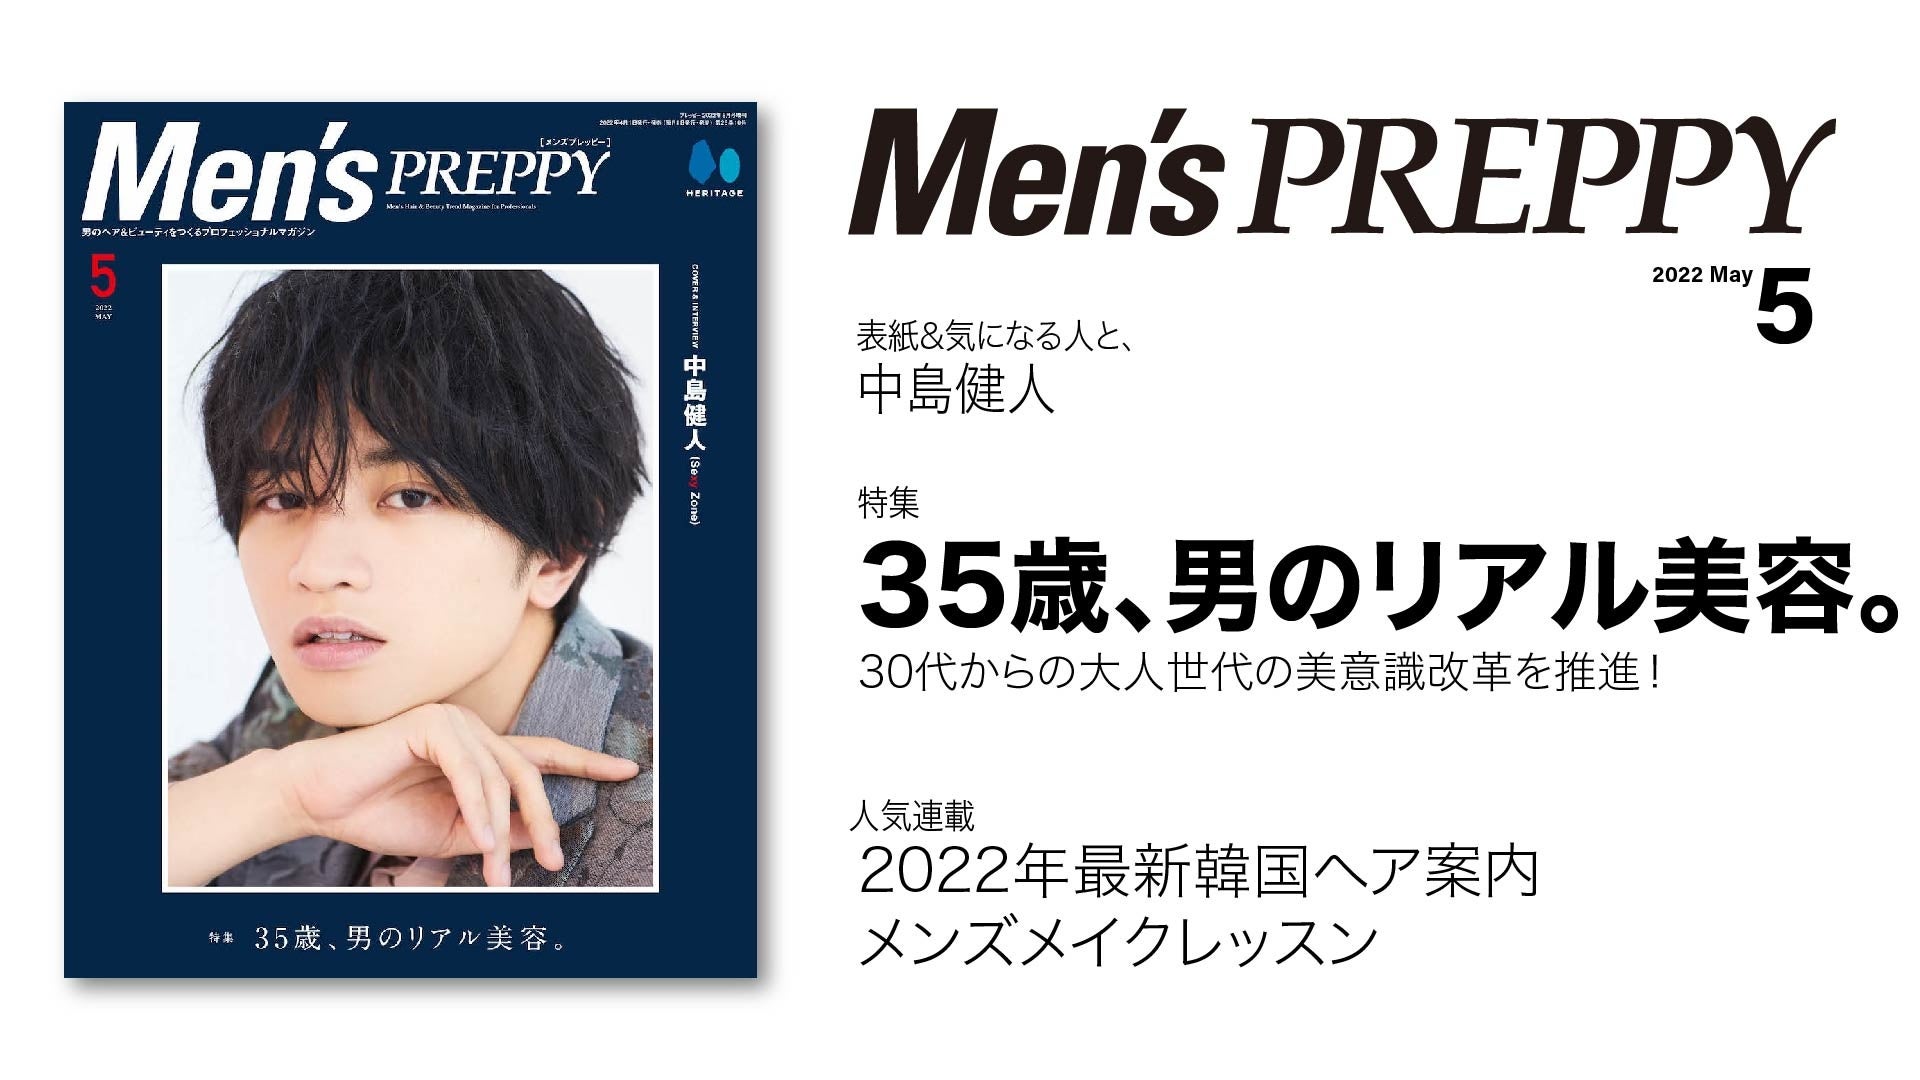 30代から始まる大人世代の「メンズの美容」事情が満載！！『Men’s PREPPY(メンズプレッピー)』5月号「35歳、男のリアル美容。」は4/1発売。大人男子のためのヘアスタイルと美容情報をお届け。